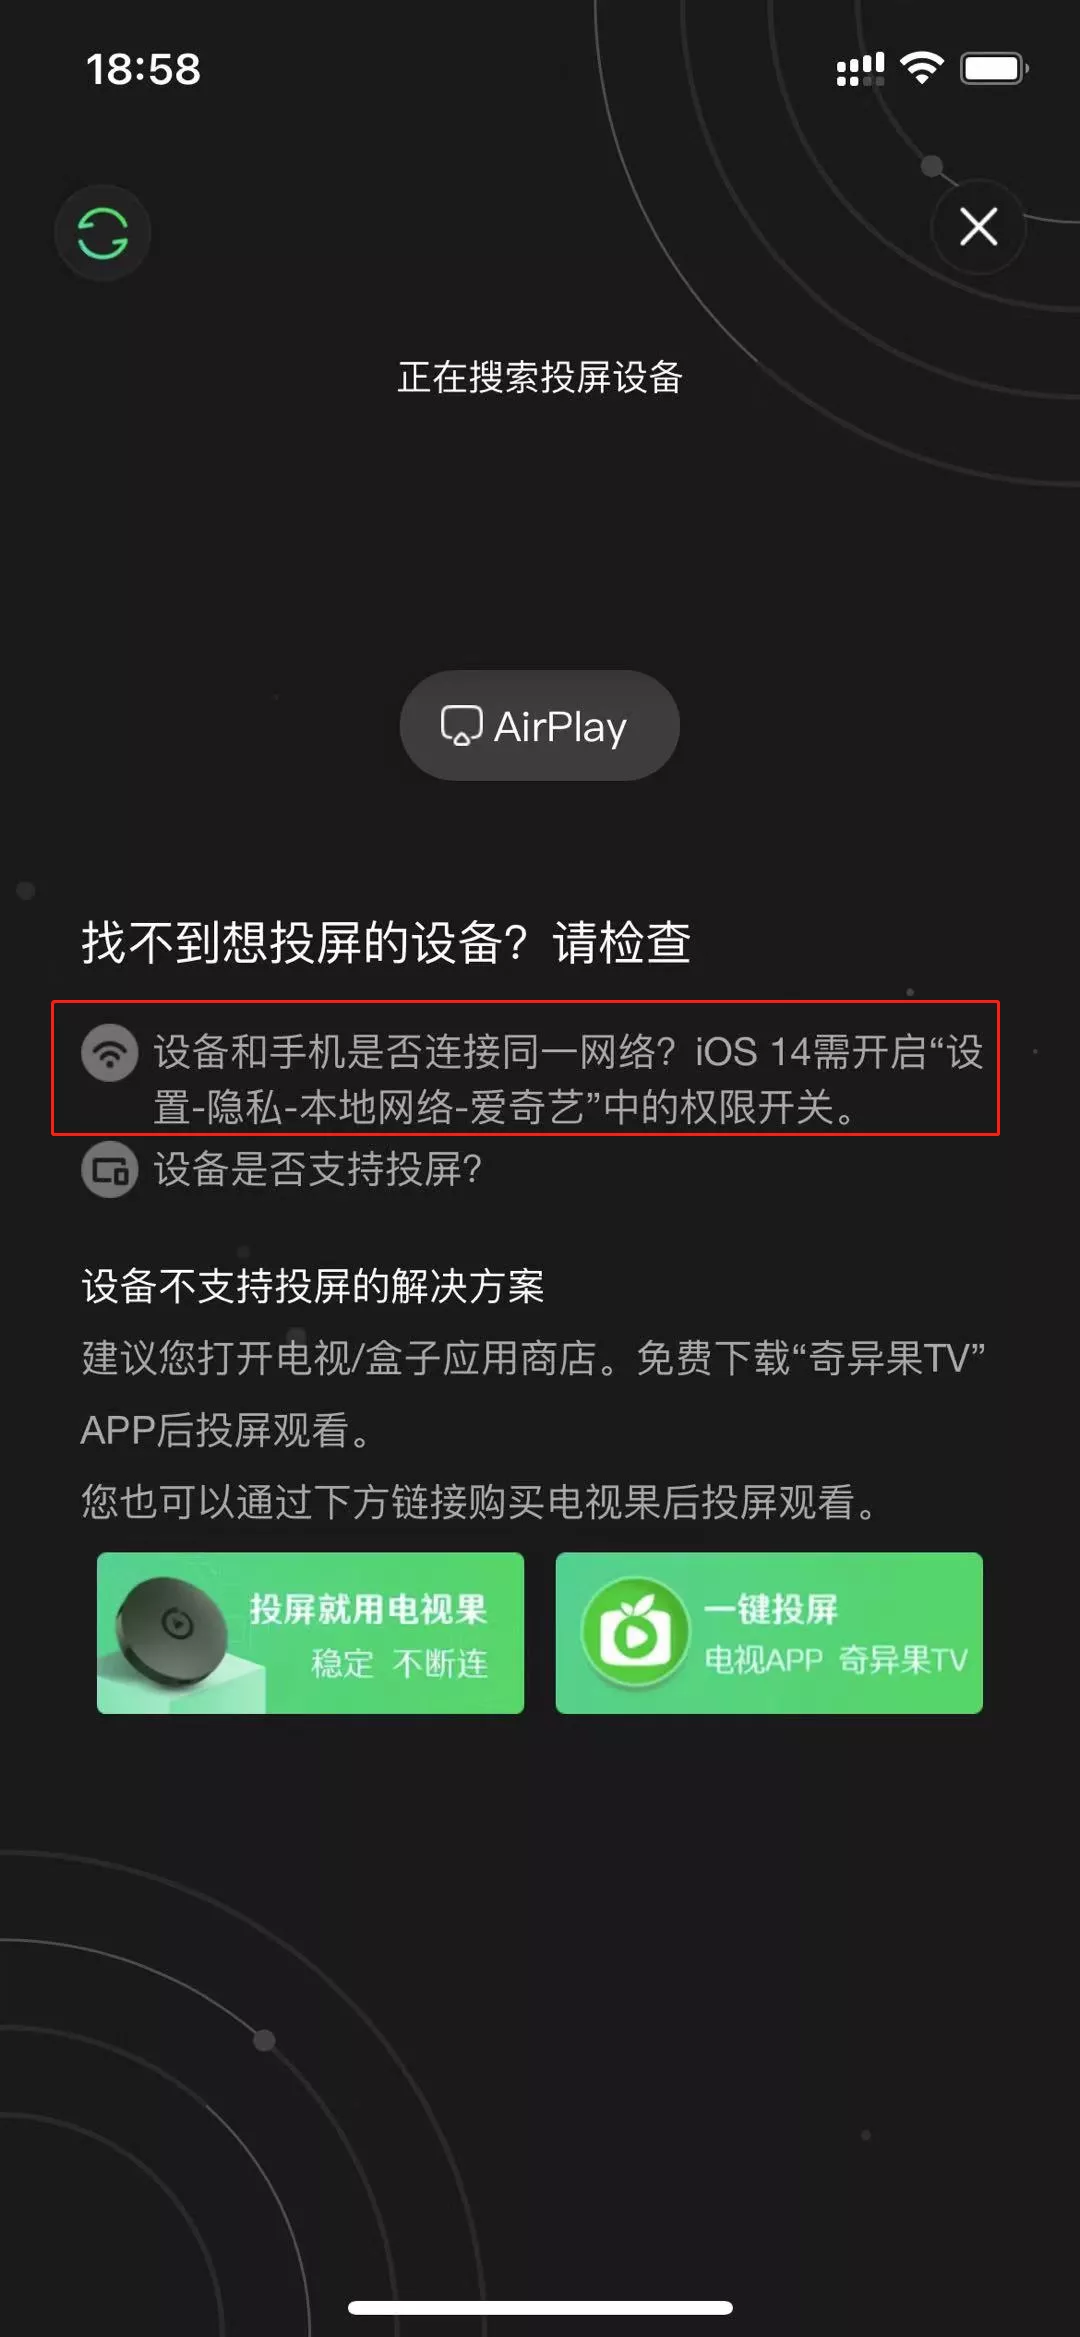 知识科普 | App申请开启“查找并连接到本地网络上的设备”权限，该拒绝吗？